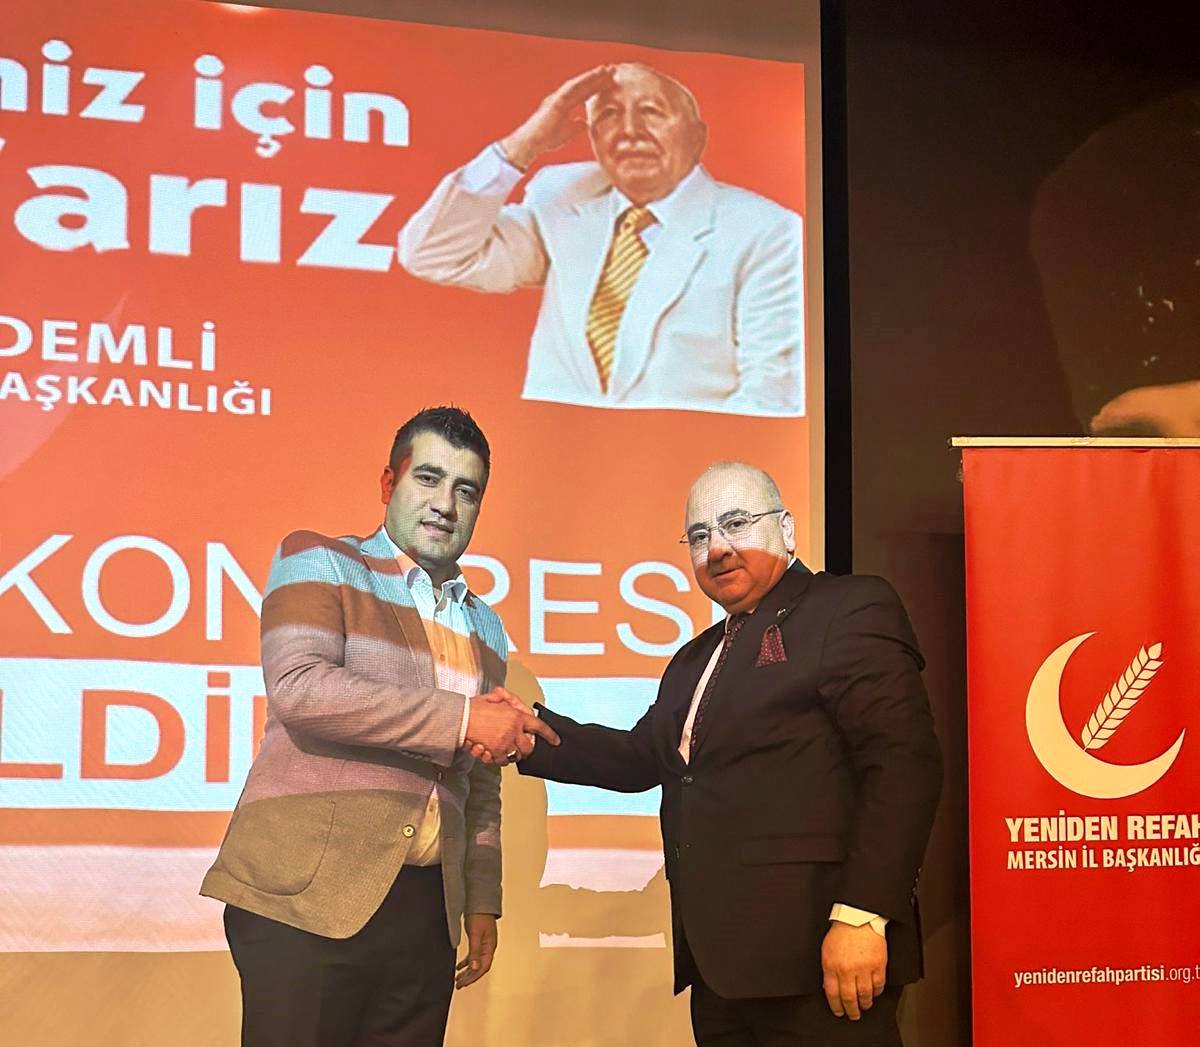 Durmuş Kartal ‘ Recep Tayyip Erdoğan ve Mustafa Akın’ı destekliyorum